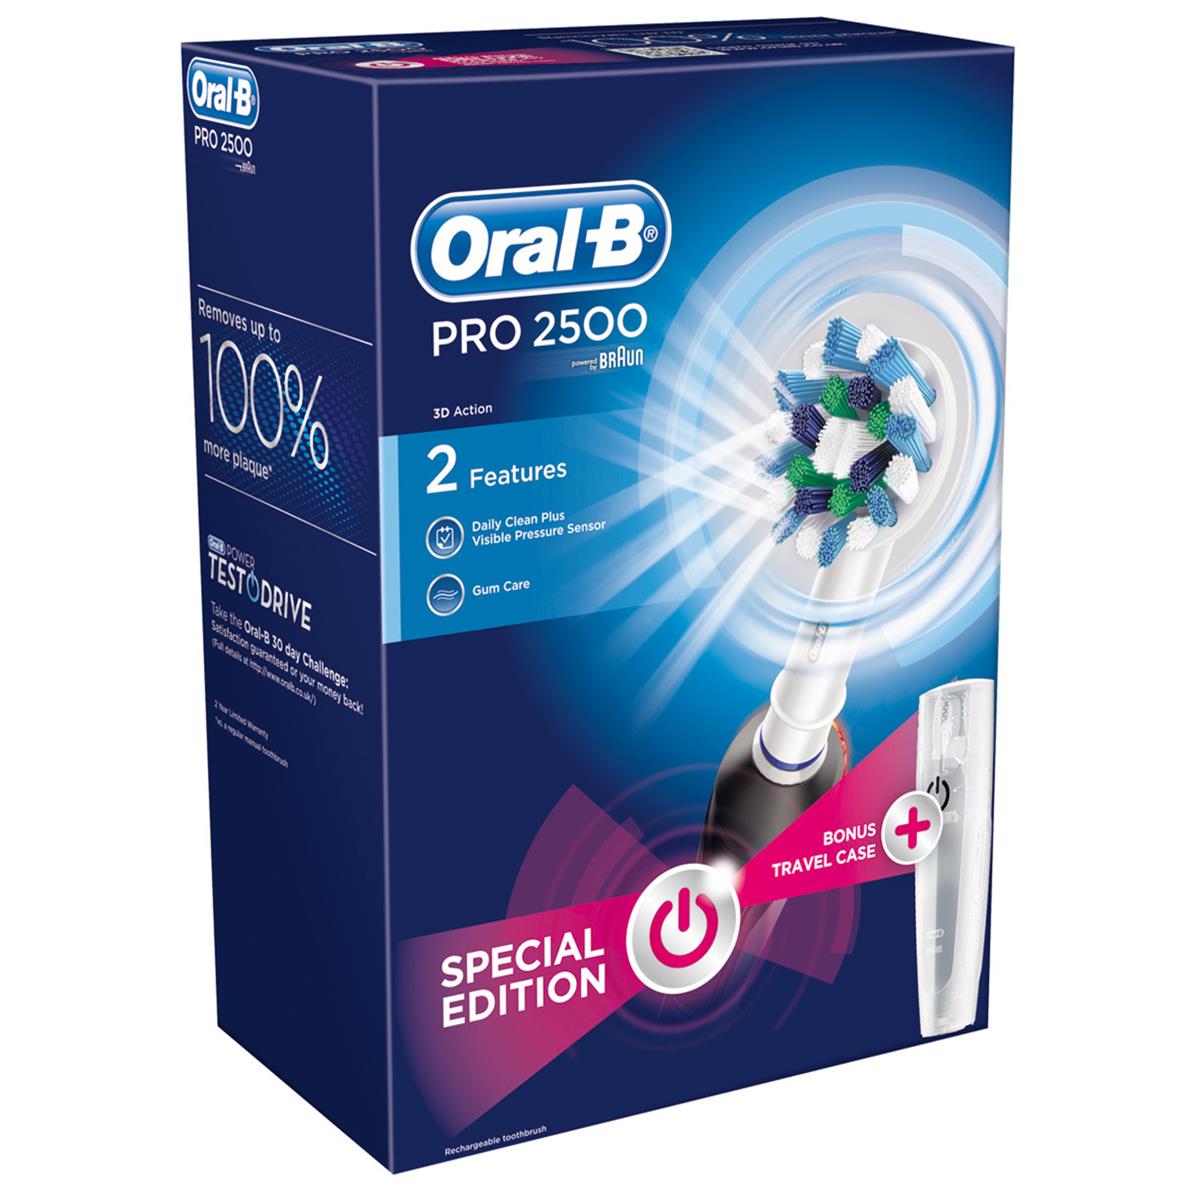 vervolging gegevens plein Oral-B Pro 2500 Electric Toothbrush Black Edition - Henry Schein Ireland